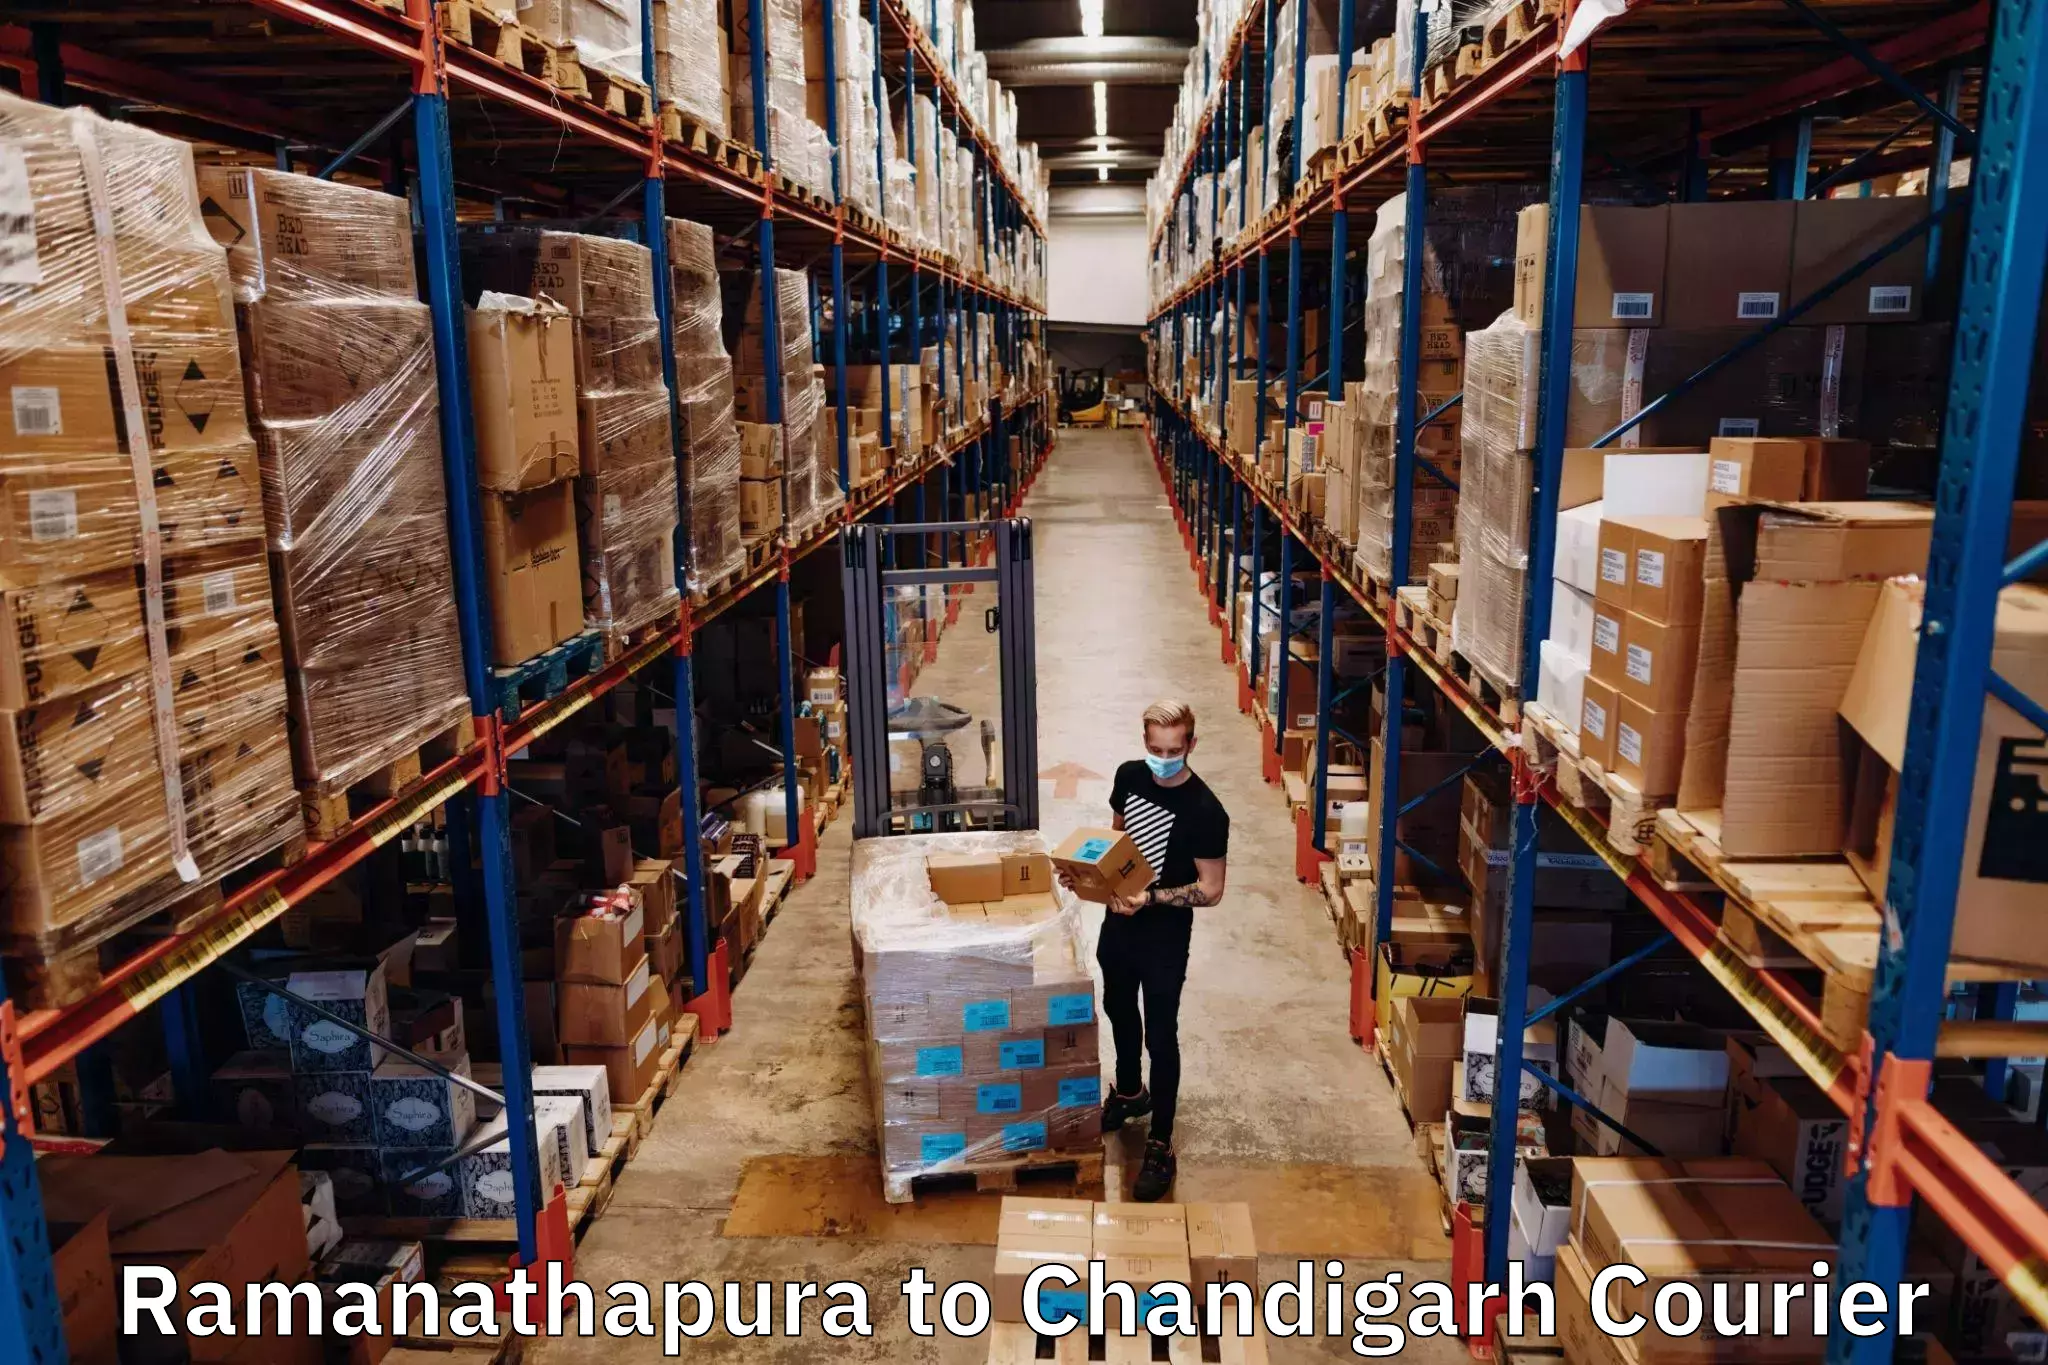 Premium courier solutions Ramanathapura to Chandigarh